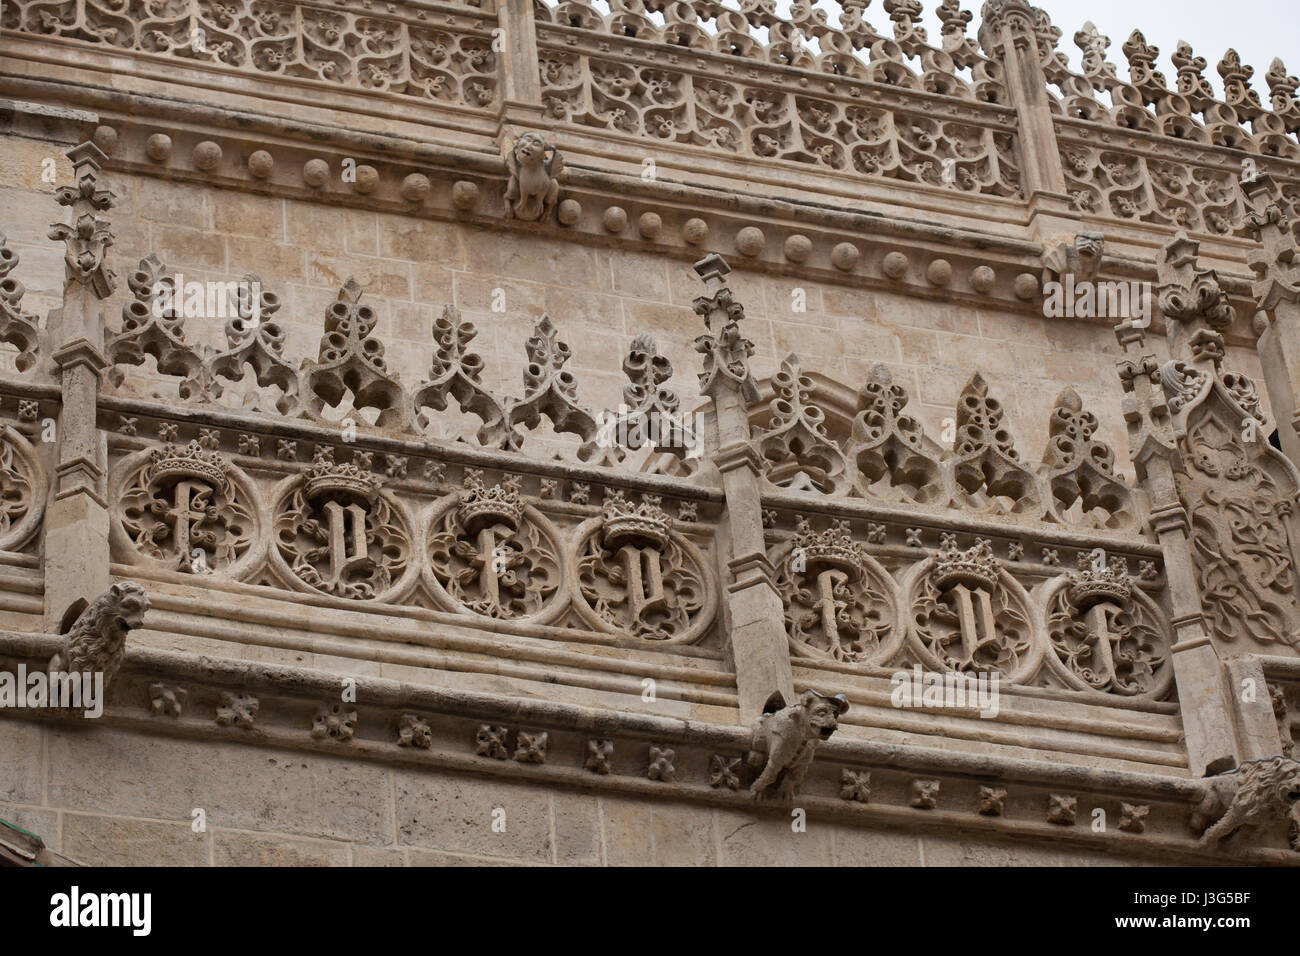 Königliche Monogramme der Königin Isabella i. von Kastilien und König Ferdinand II von Aragon auf die Fassade der königlichen Kapelle (Capilla Real de Granada), wo die katholischen Könige (Los Reyes Catolicos) in Granada, Andalusien, Spanien begraben sind, dargestellt. Stockfoto